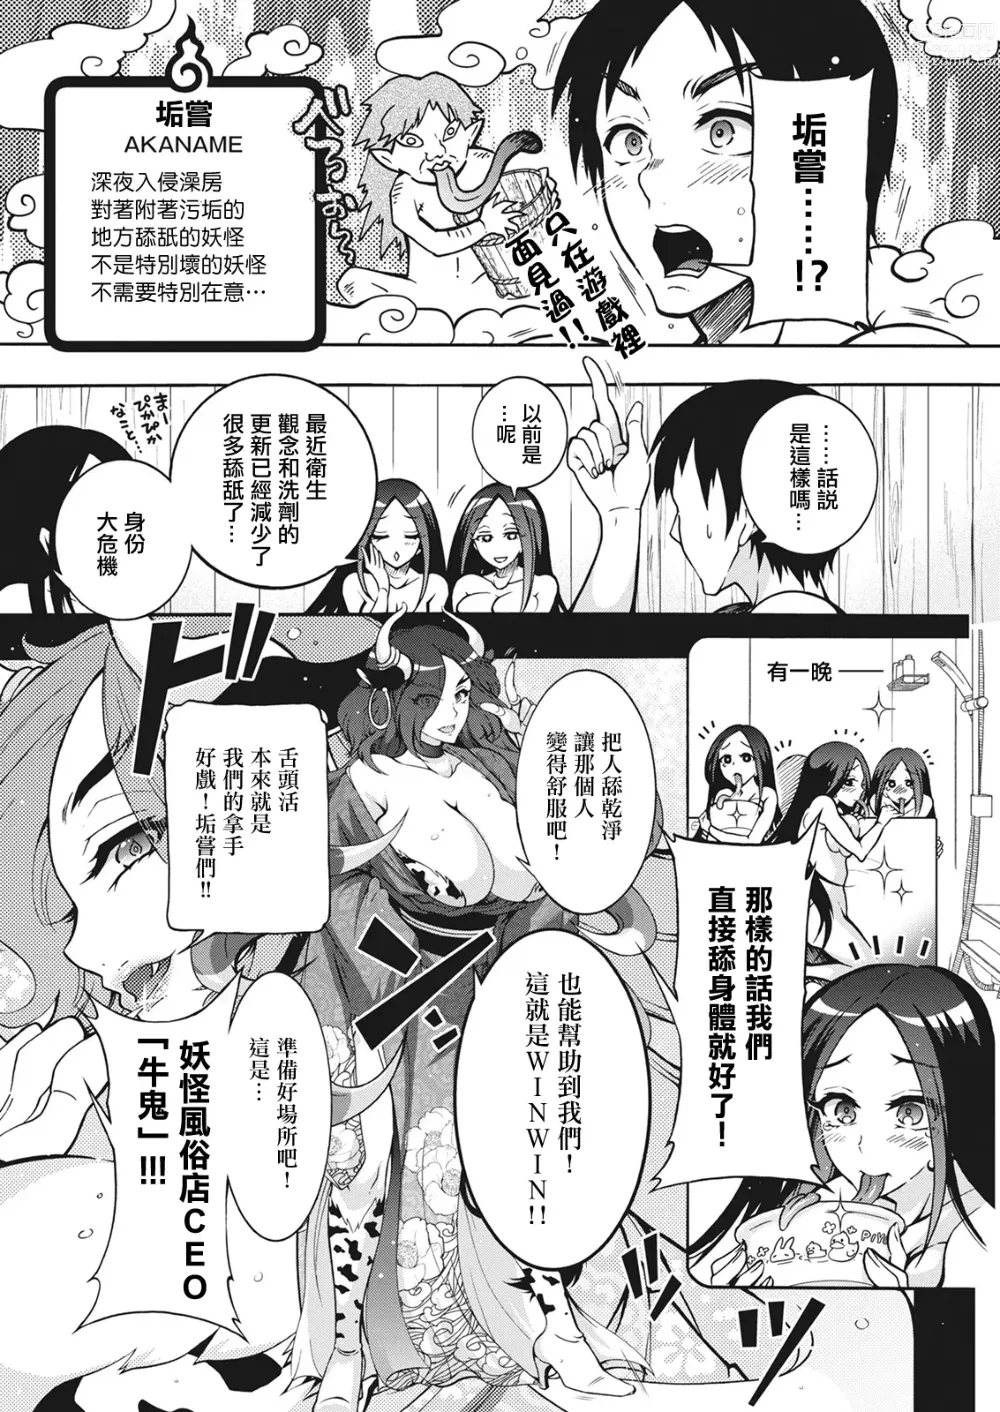 Page 6 of manga 妖怪HHH